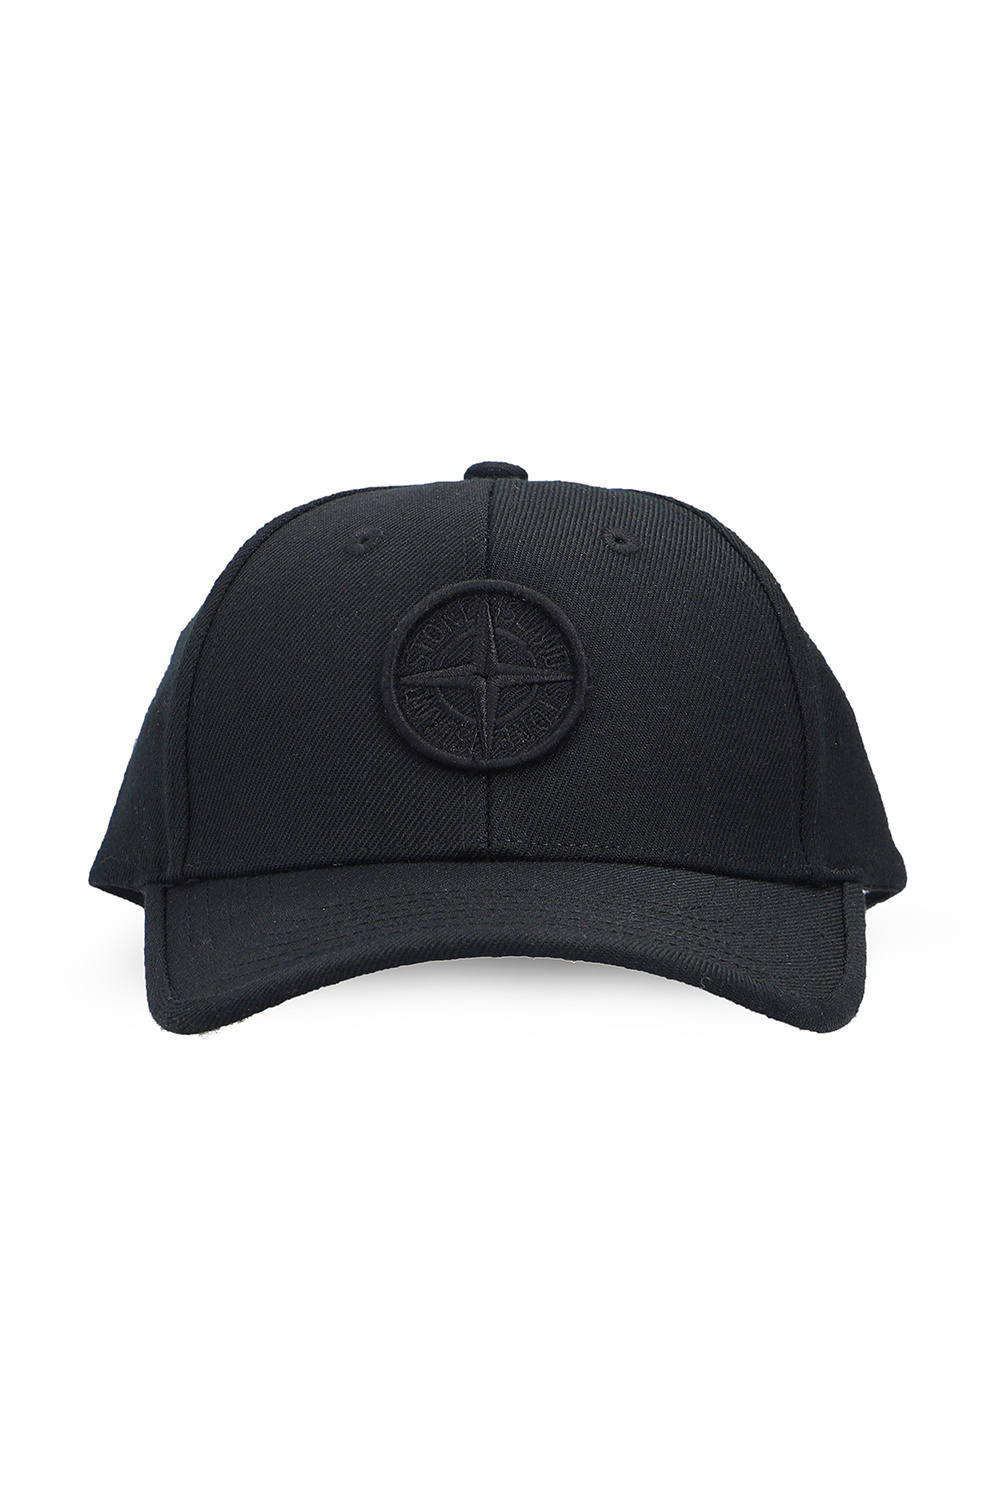 sequin bucket hat Baseball cap with logo